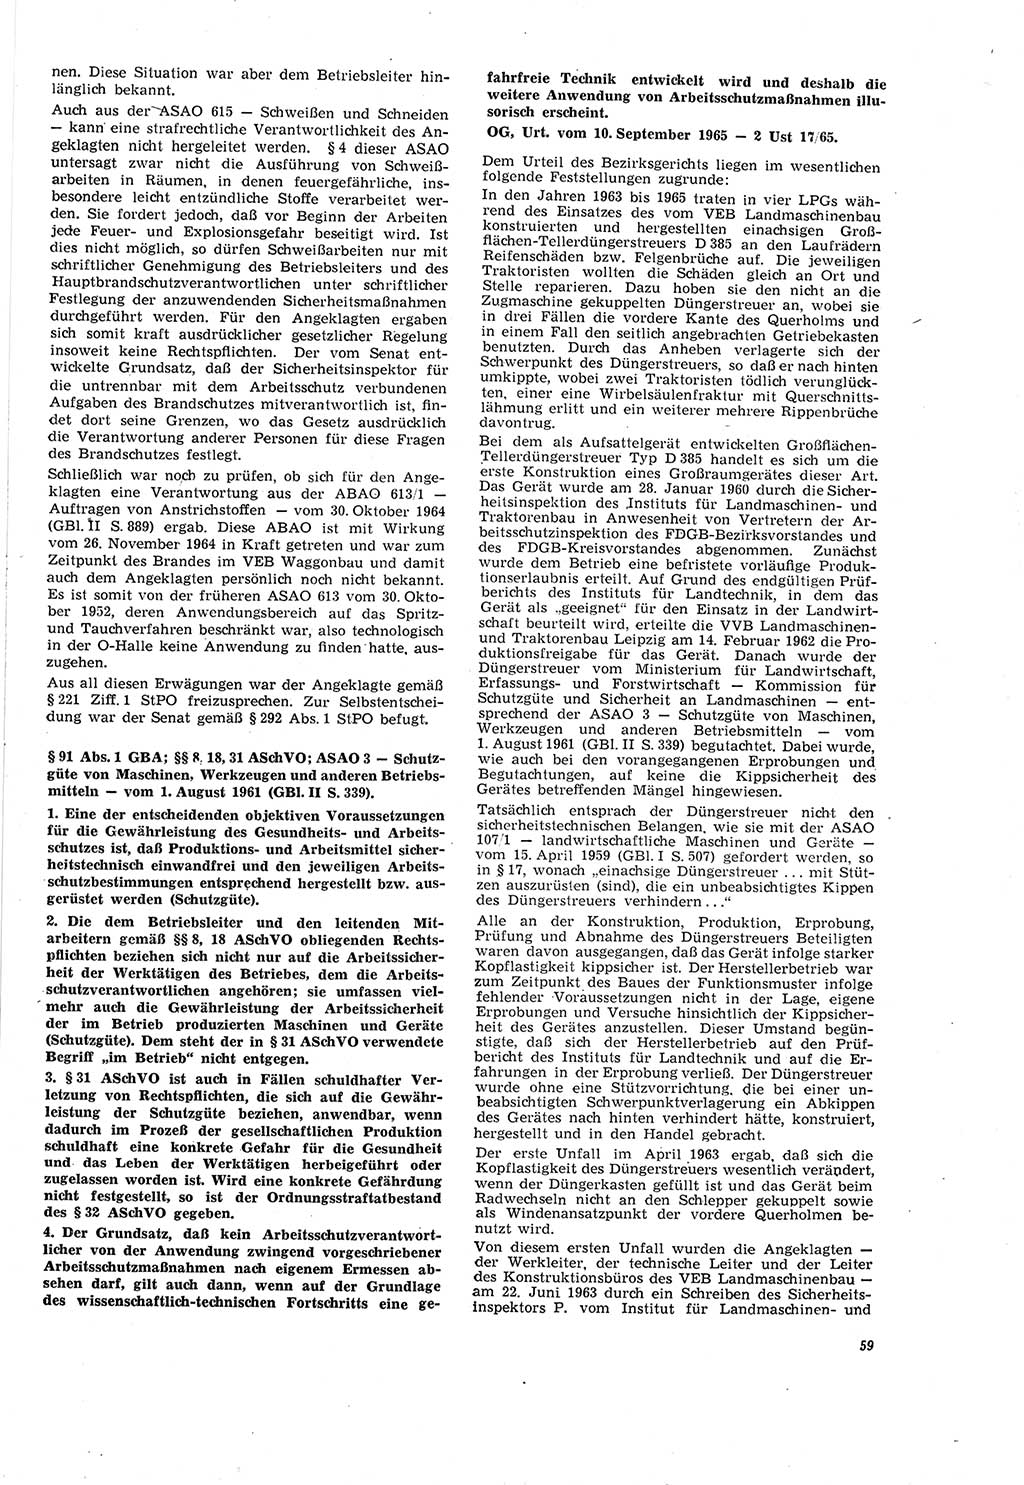 Neue Justiz (NJ), Zeitschrift für Recht und Rechtswissenschaft [Deutsche Demokratische Republik (DDR)], 20. Jahrgang 1966, Seite 59 (NJ DDR 1966, S. 59)